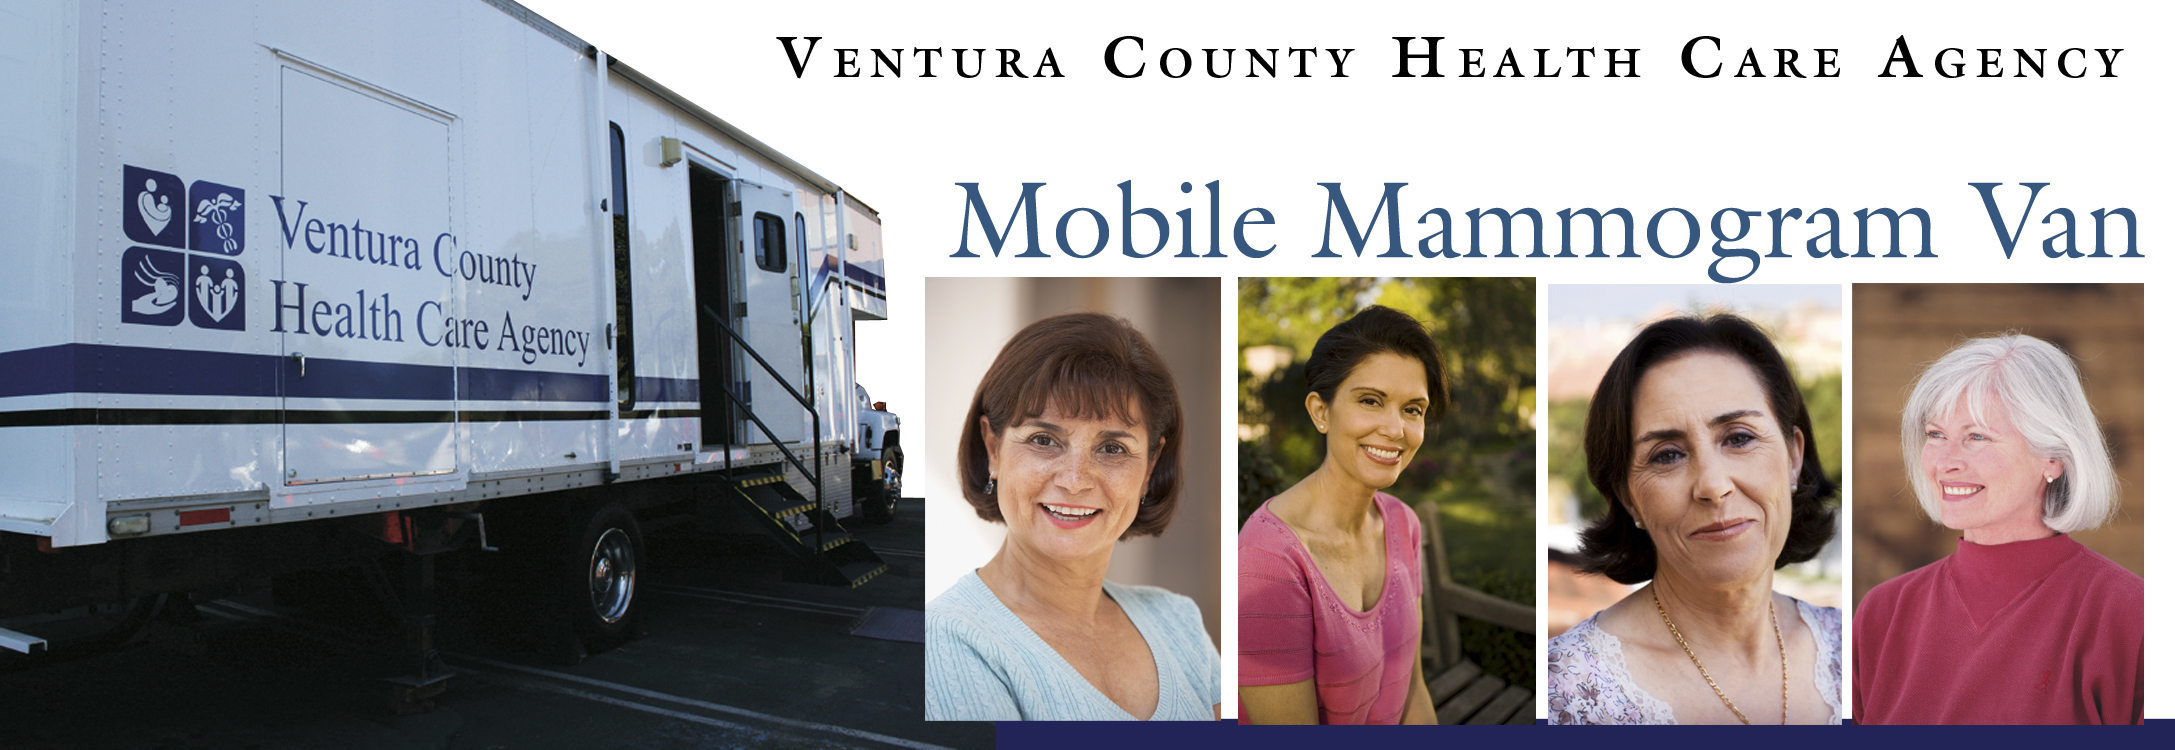 Mobile Mammogram Van